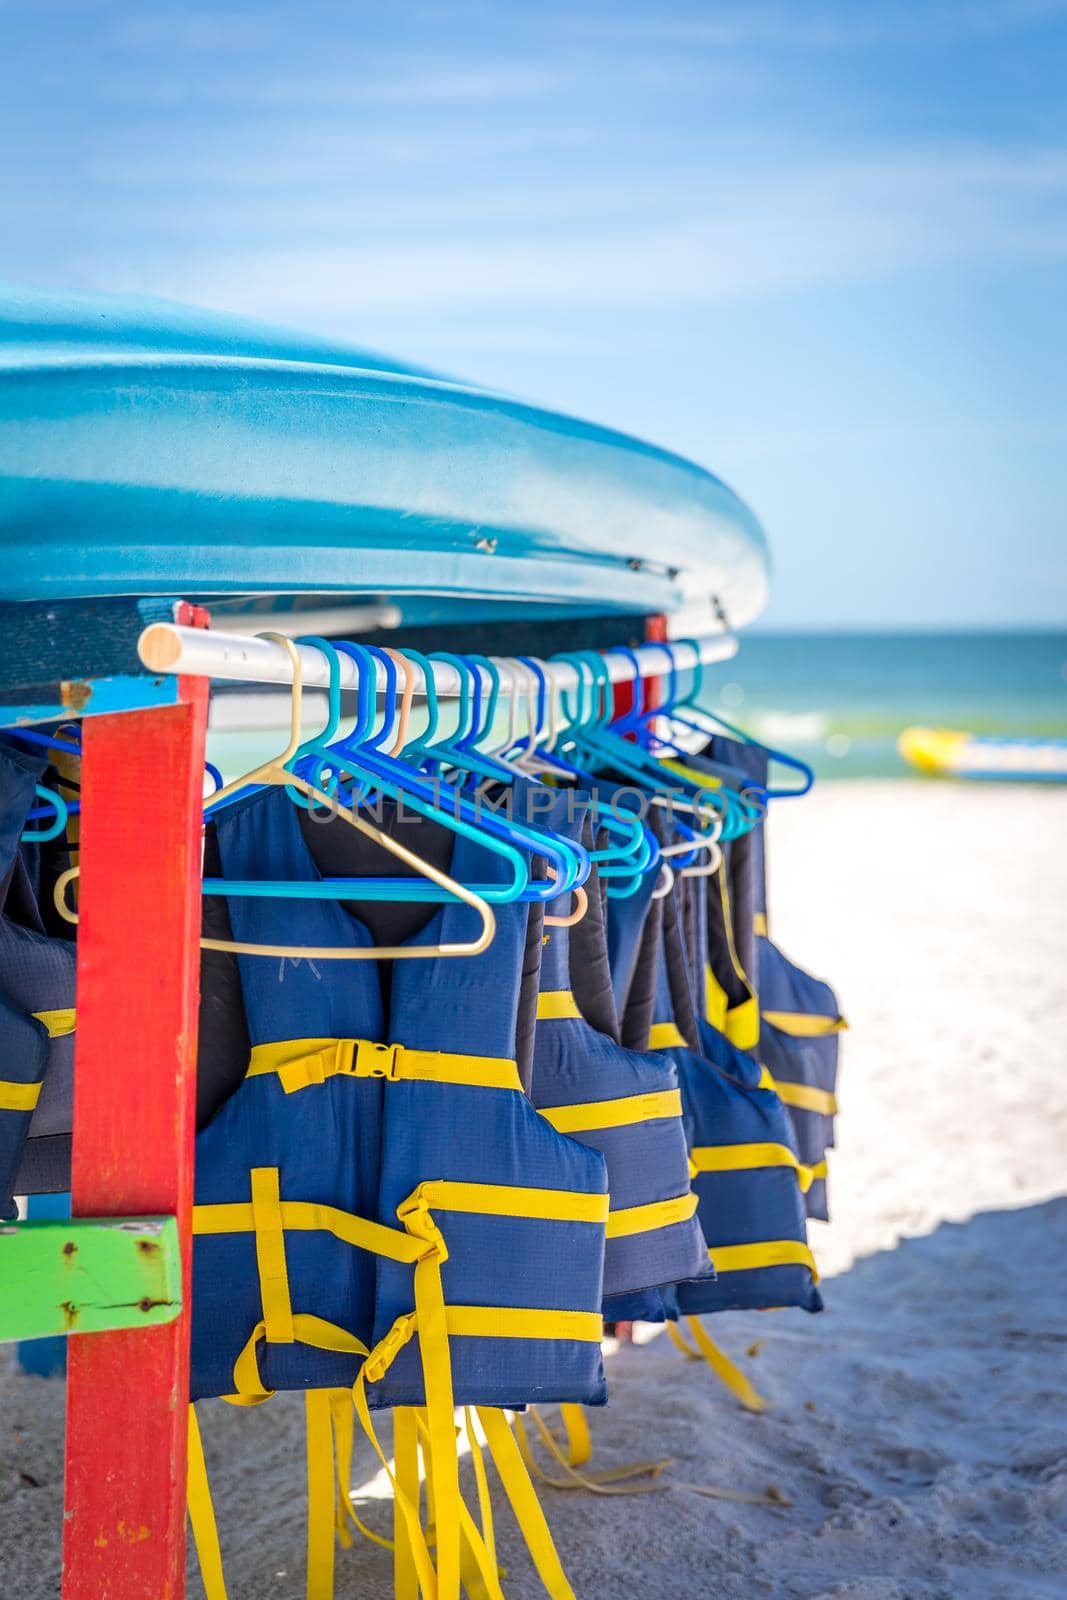 ST.PETE BEACH, FLORIDA, USA - SEPTEMBER 03, 2014: Life jackets and boats on St.Pete beach in Florida, on September, 2014, USA.